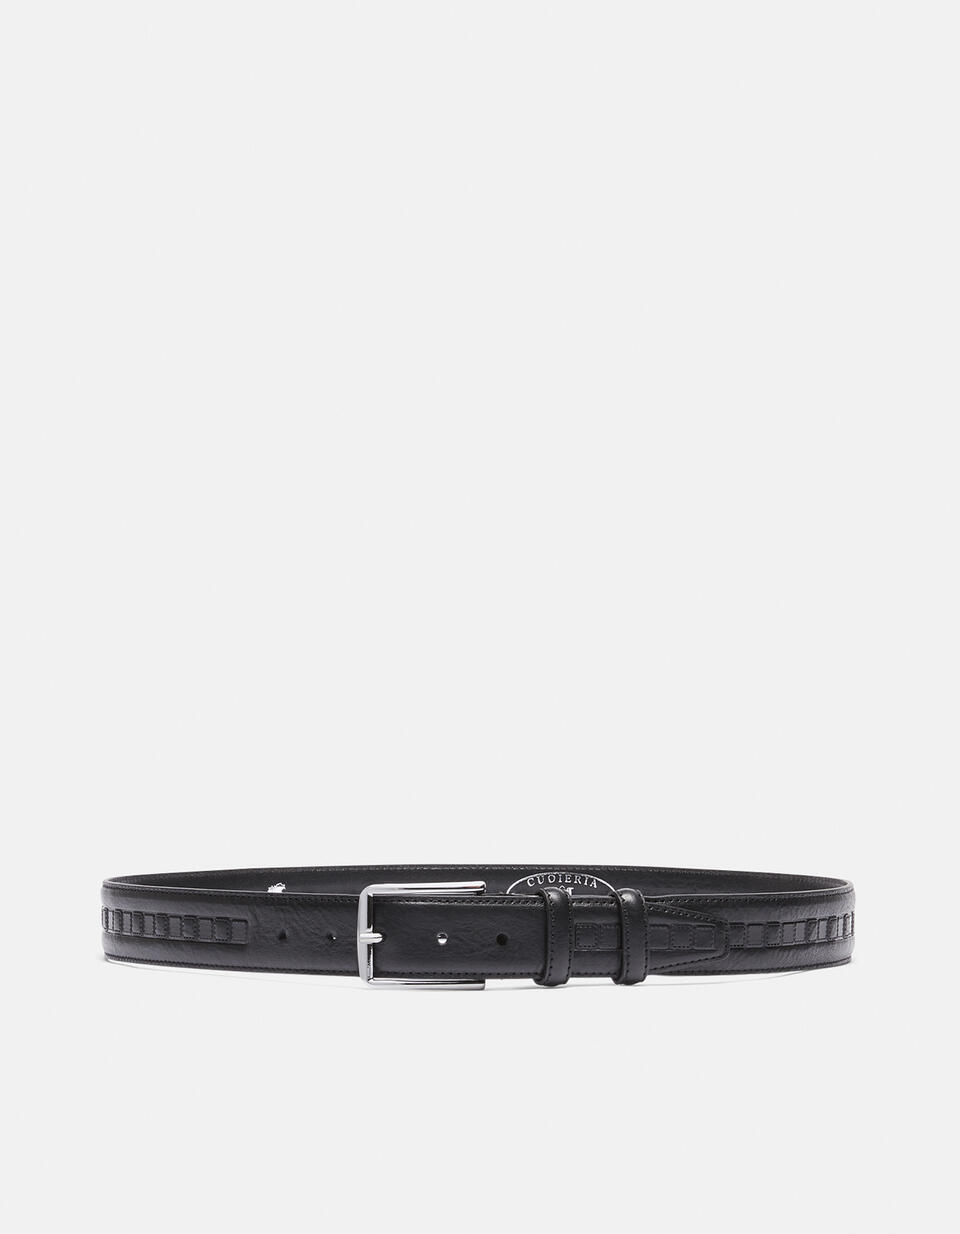 Belt leather working height 3.5 cm. - Men Belts | Belts NERO - Men Belts | BeltsCuoieria Fiorentina